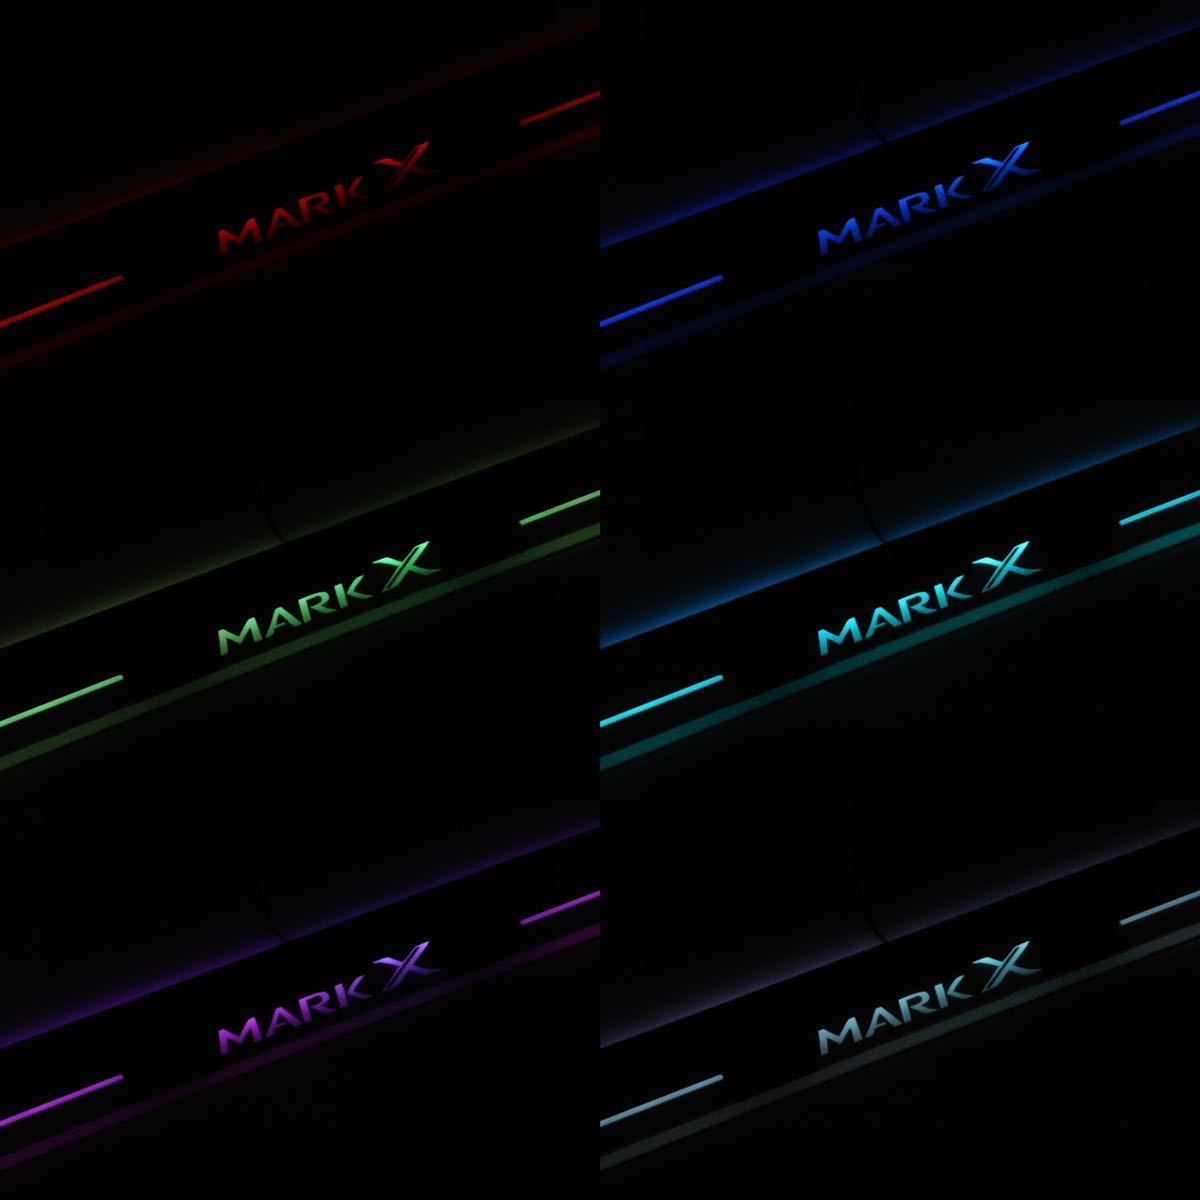  TOYOTA MARKX マークX Markx GRX130 130系 流れるスカッフプレート 4枚フルセット イルミネーションプレート LED レインボー 虹 _画像8